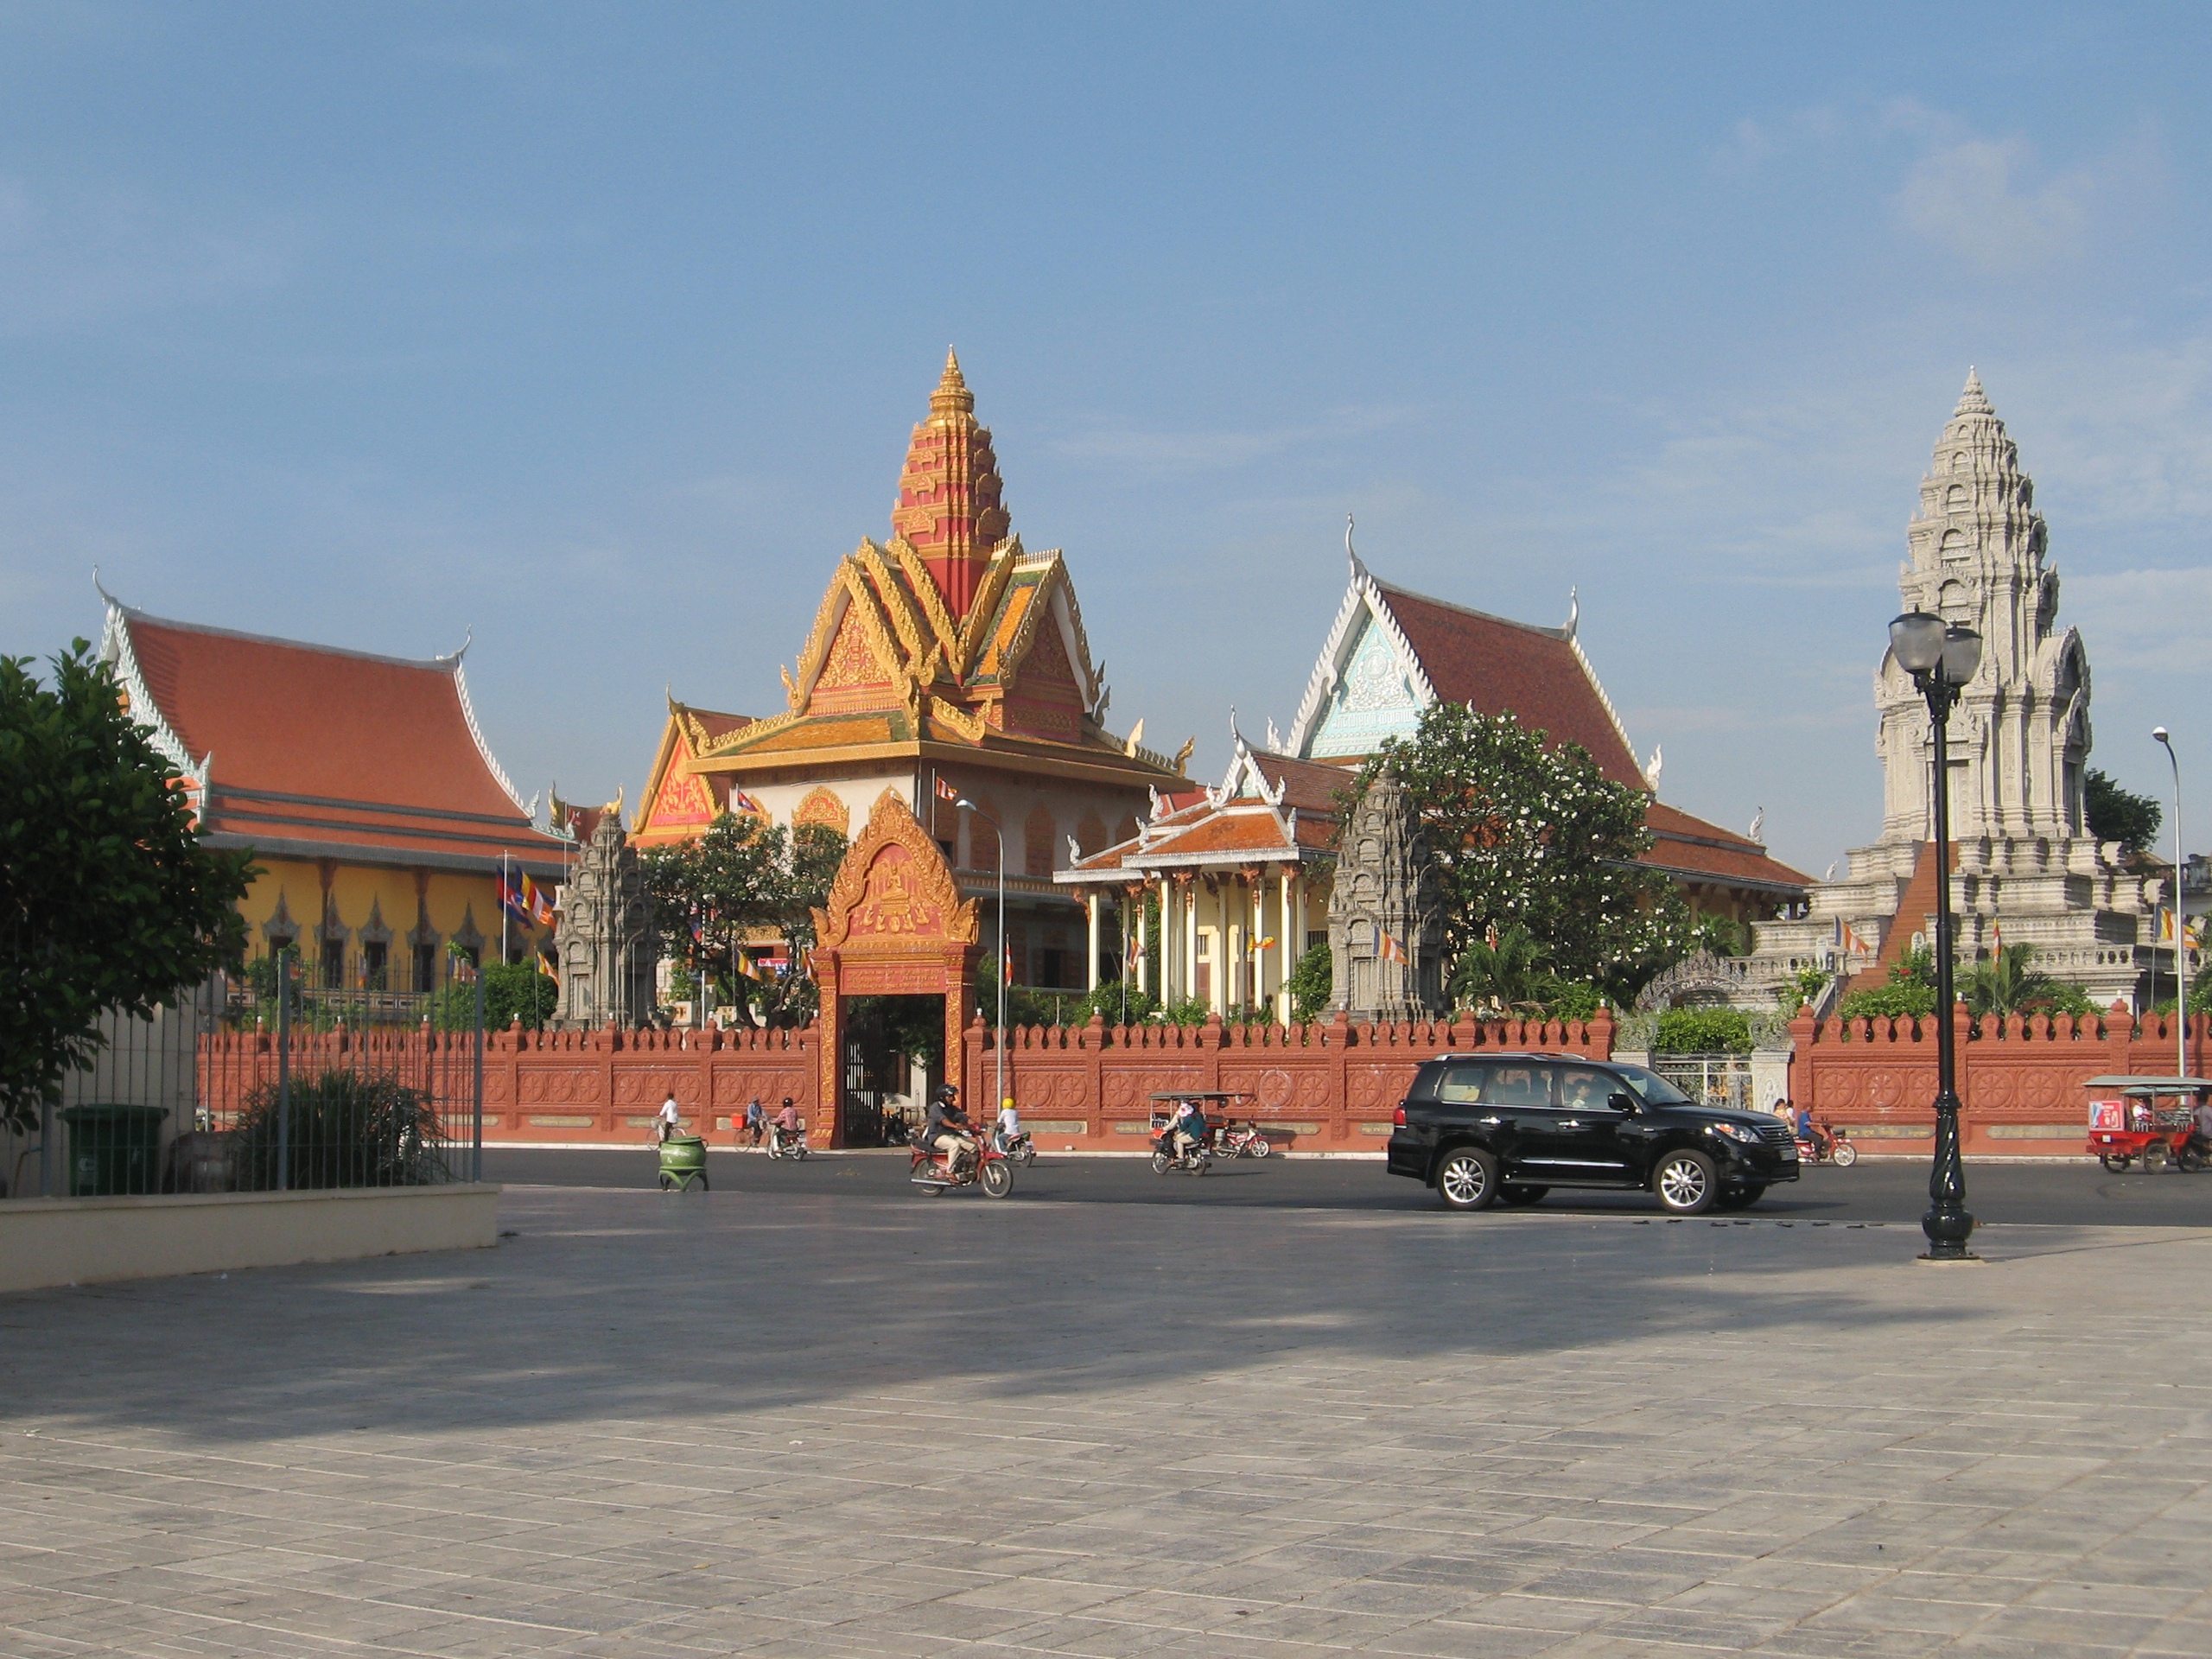 Gợi ý địa điểm du lịch độc đáo tại Phnom Penh, Campuchia